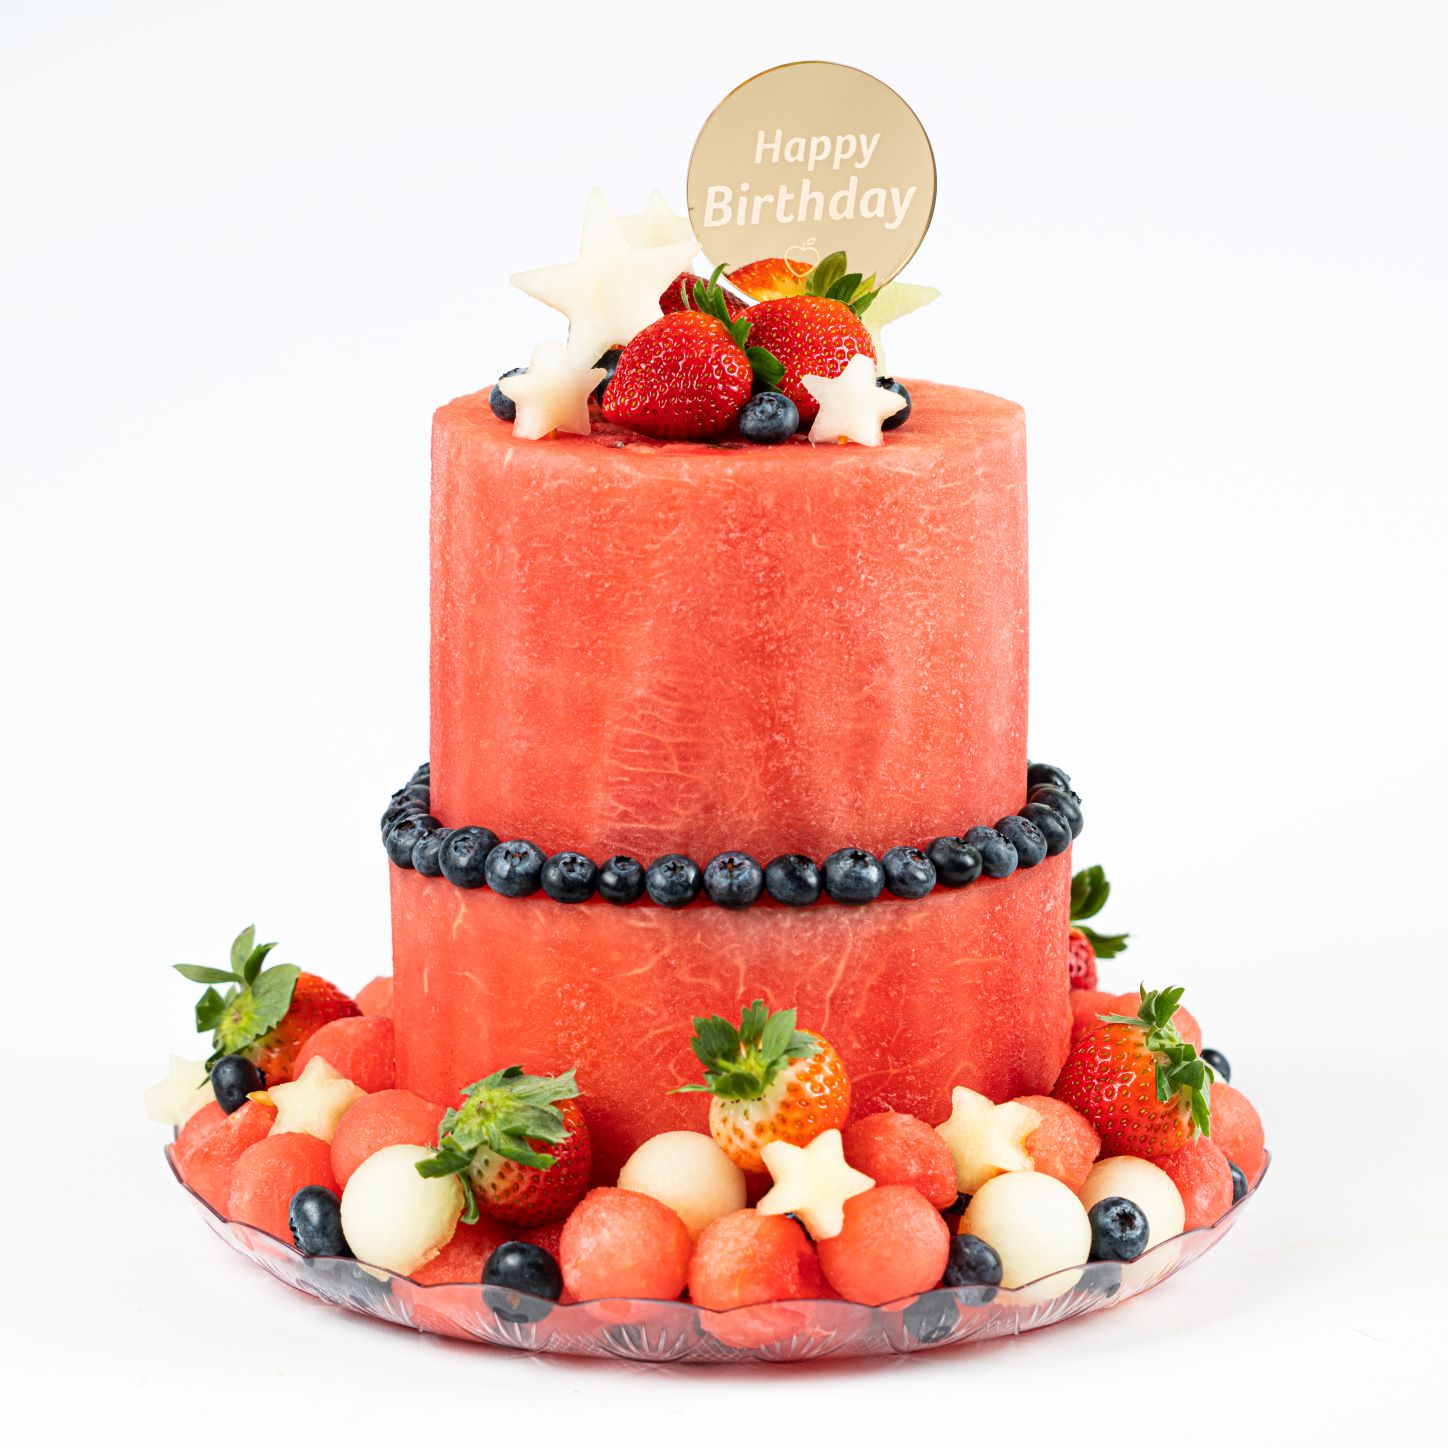 Happy Birthday Cake 2 Tier (27 cm)